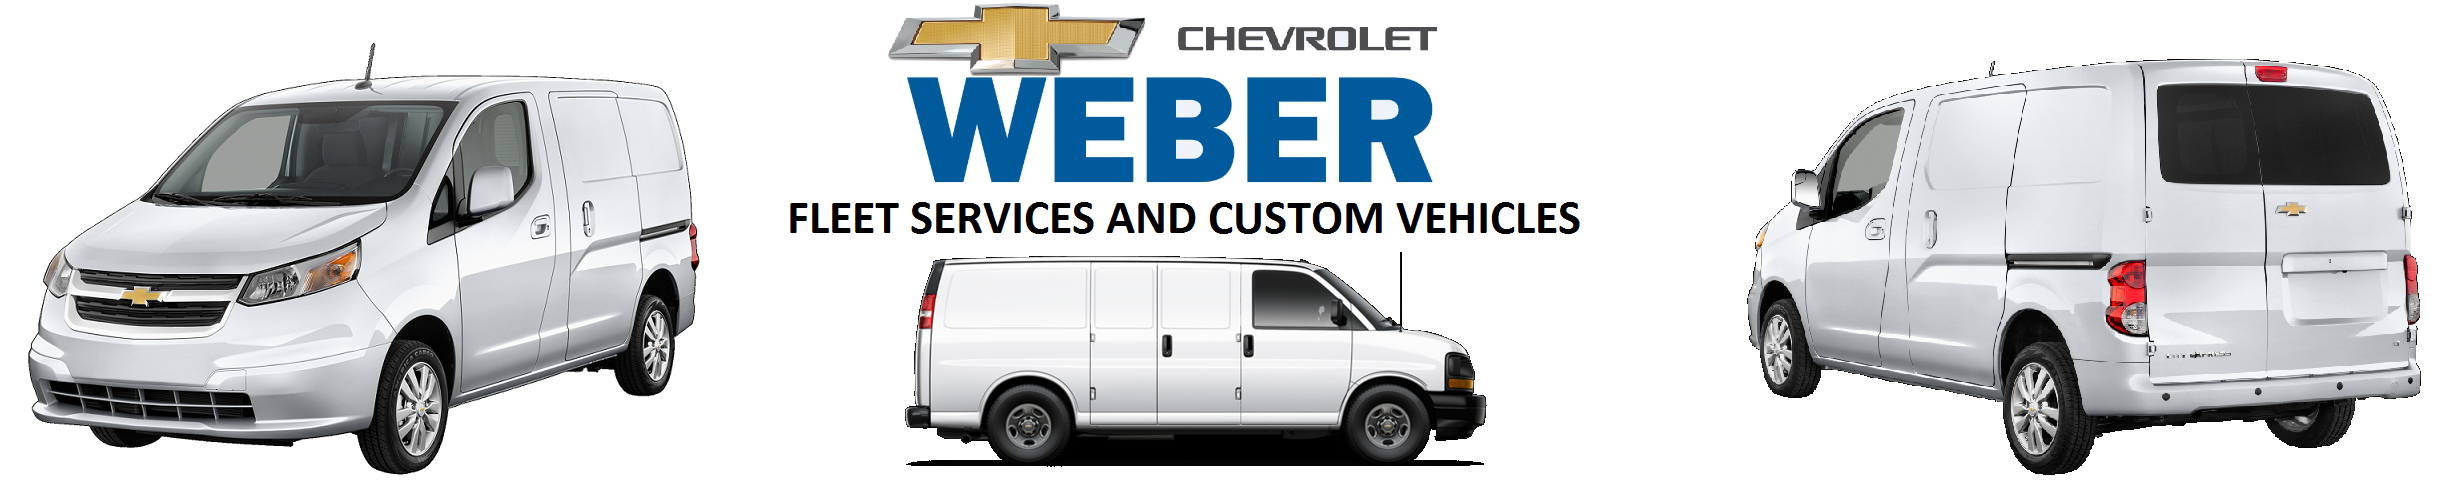 Chevy Truck & Van Fleet at Weber Chevrolet in St. Louis MO